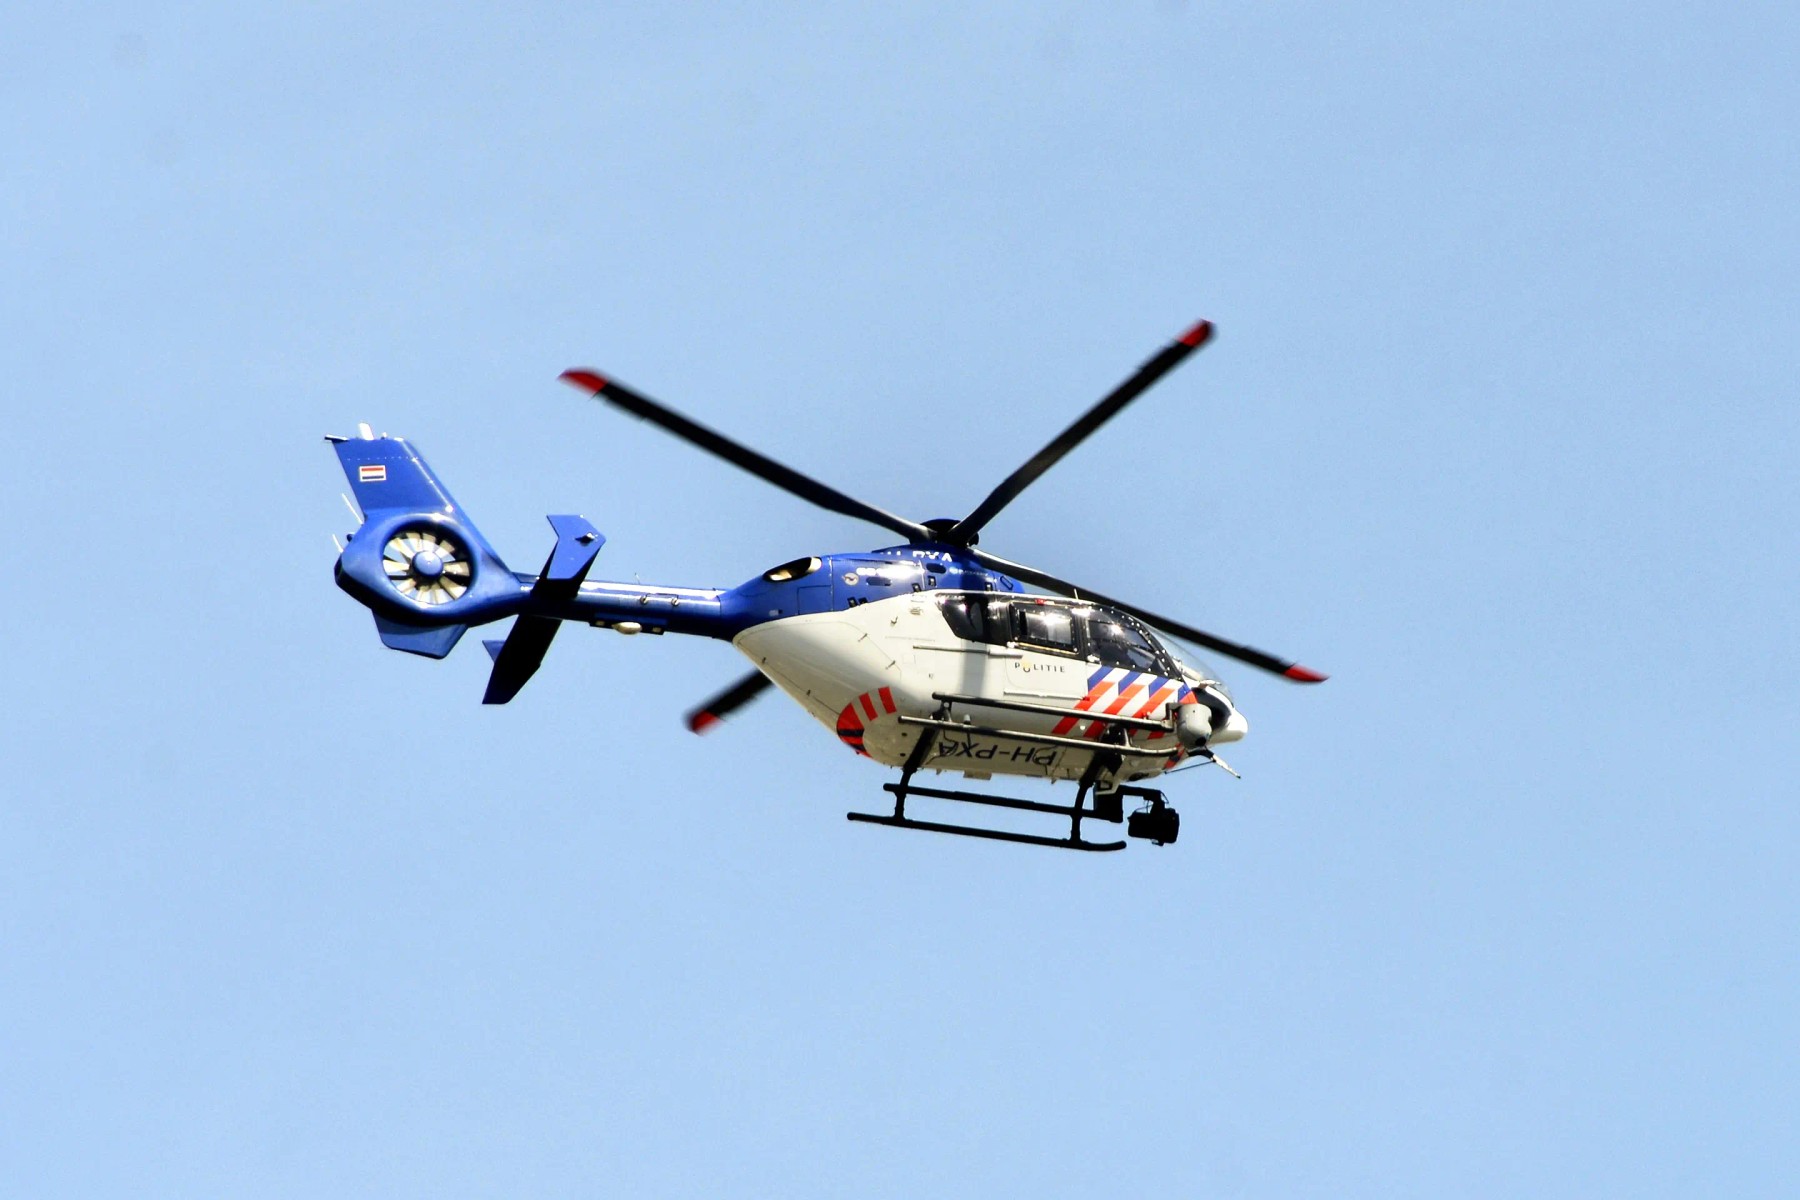 studio-dumbar-police-helicopter-branding-striping-politie-1600x.webp